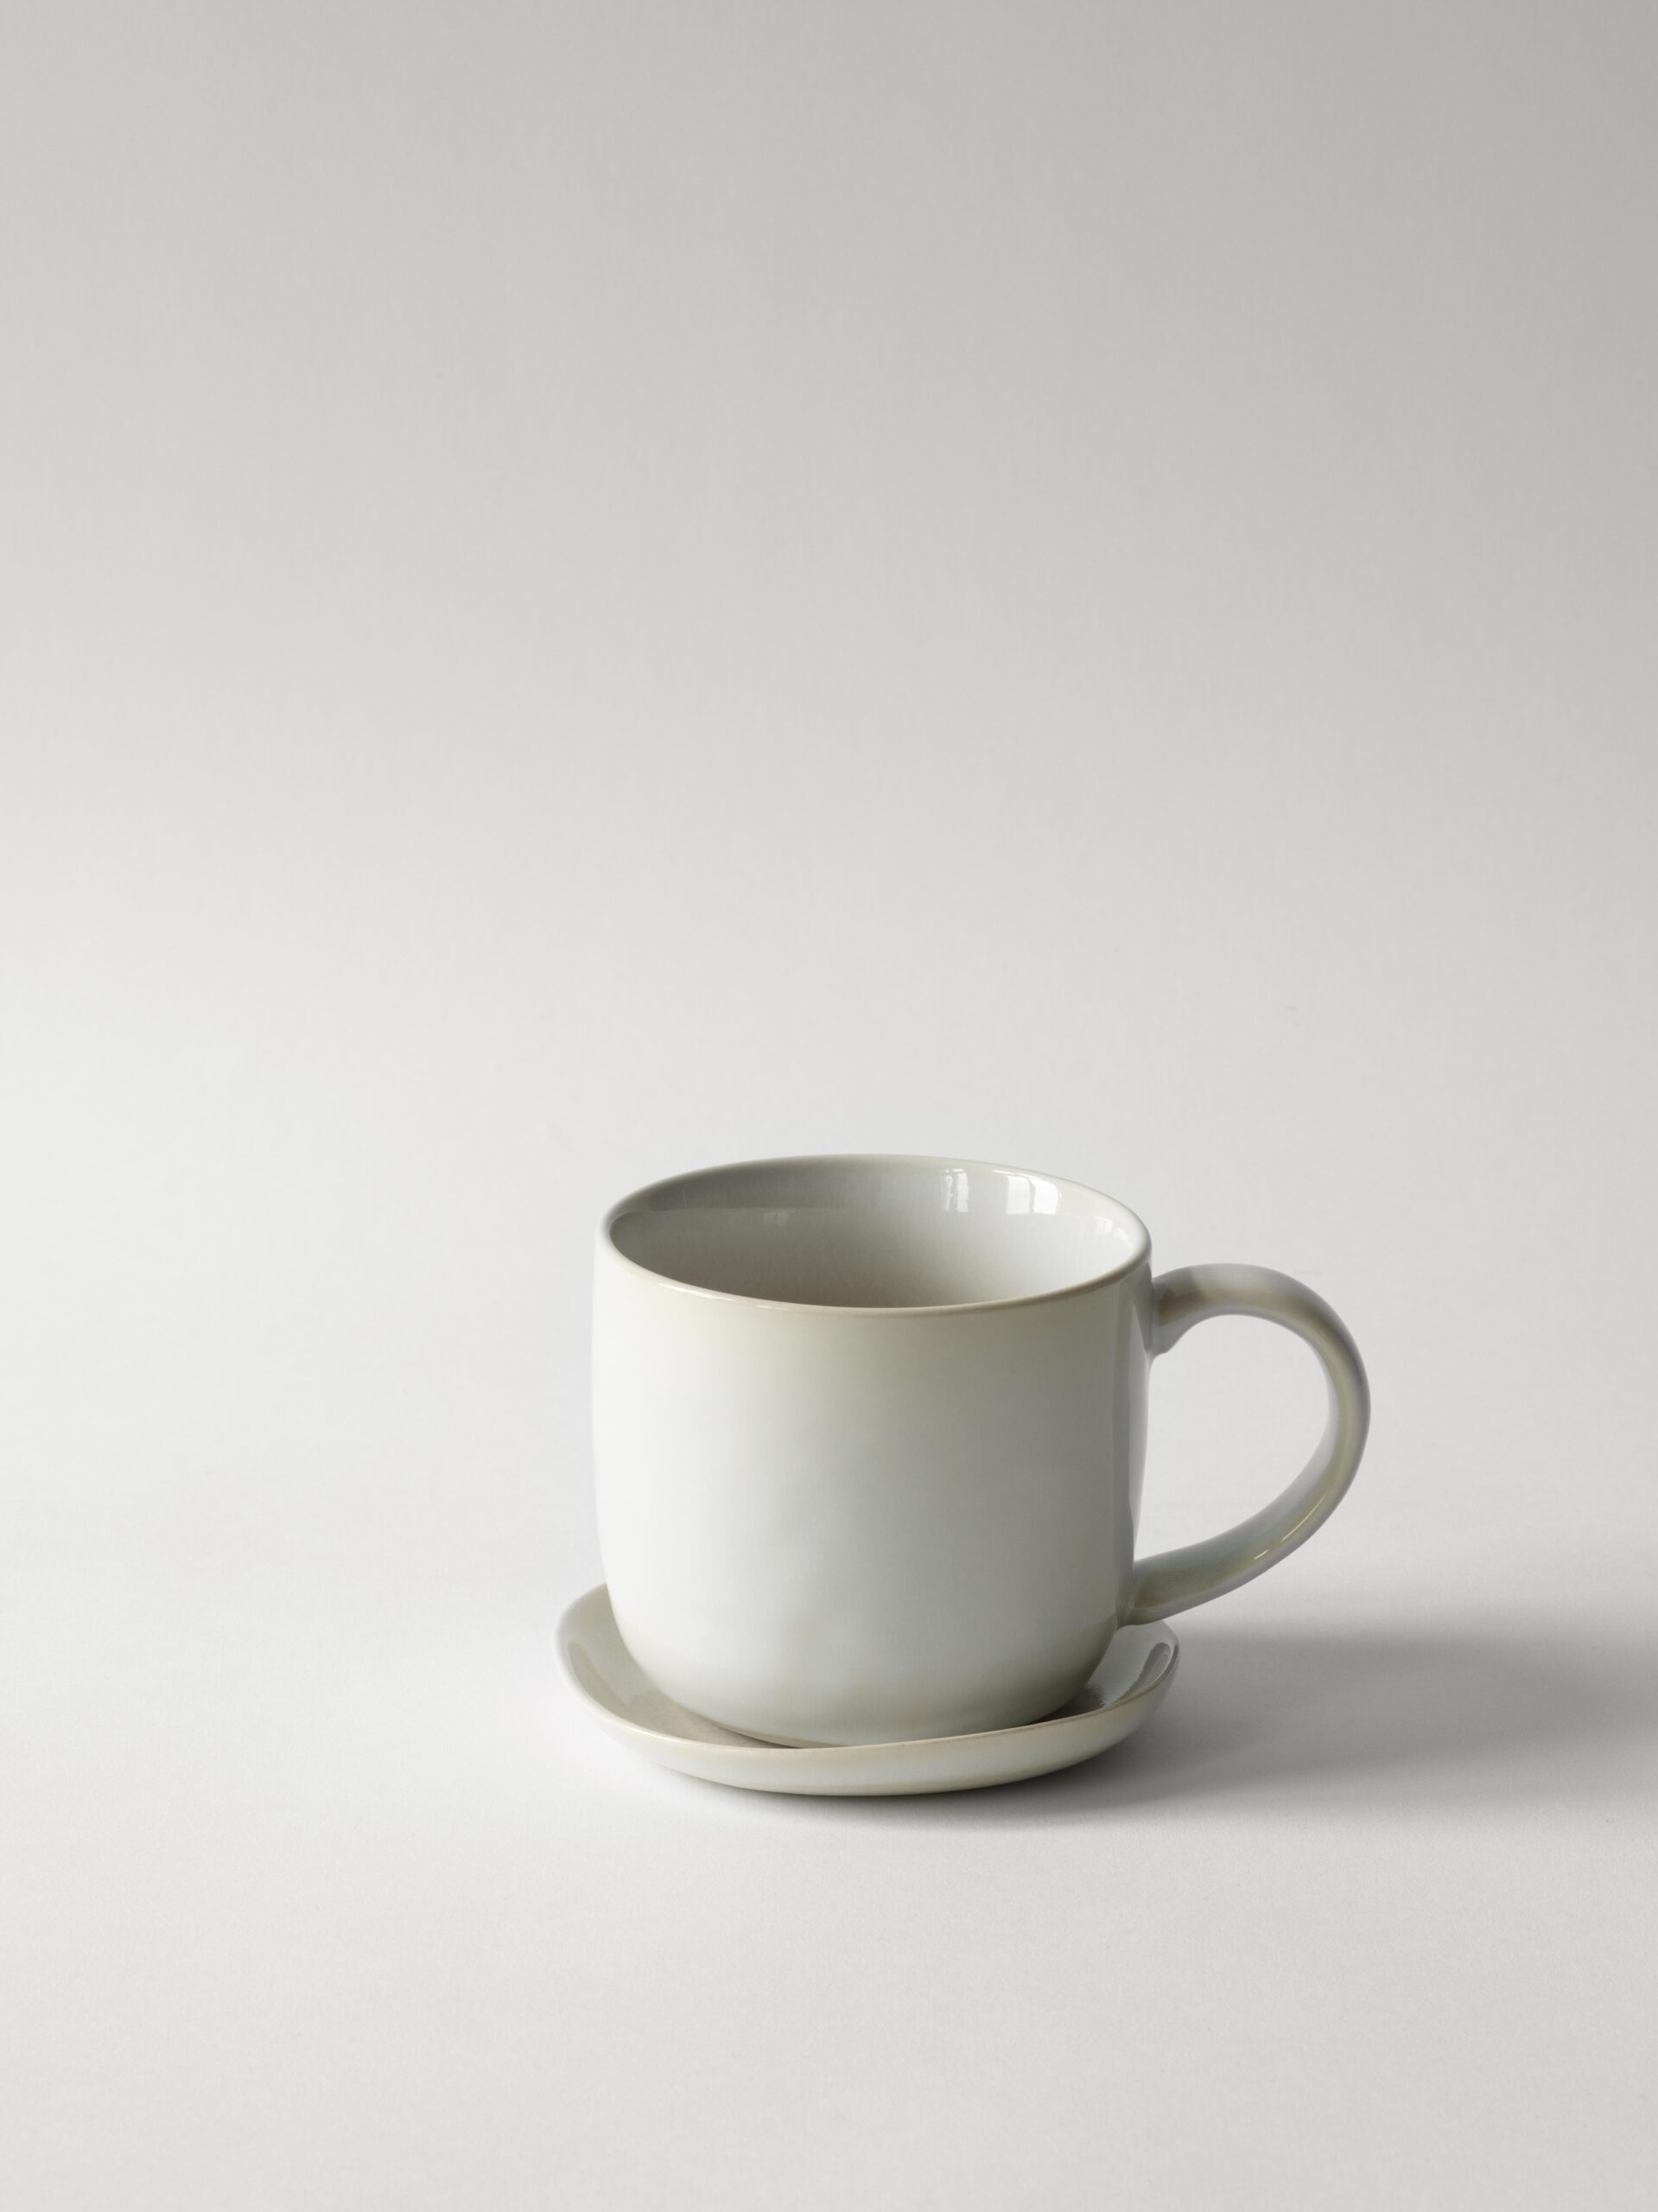 O-vince mug and plate